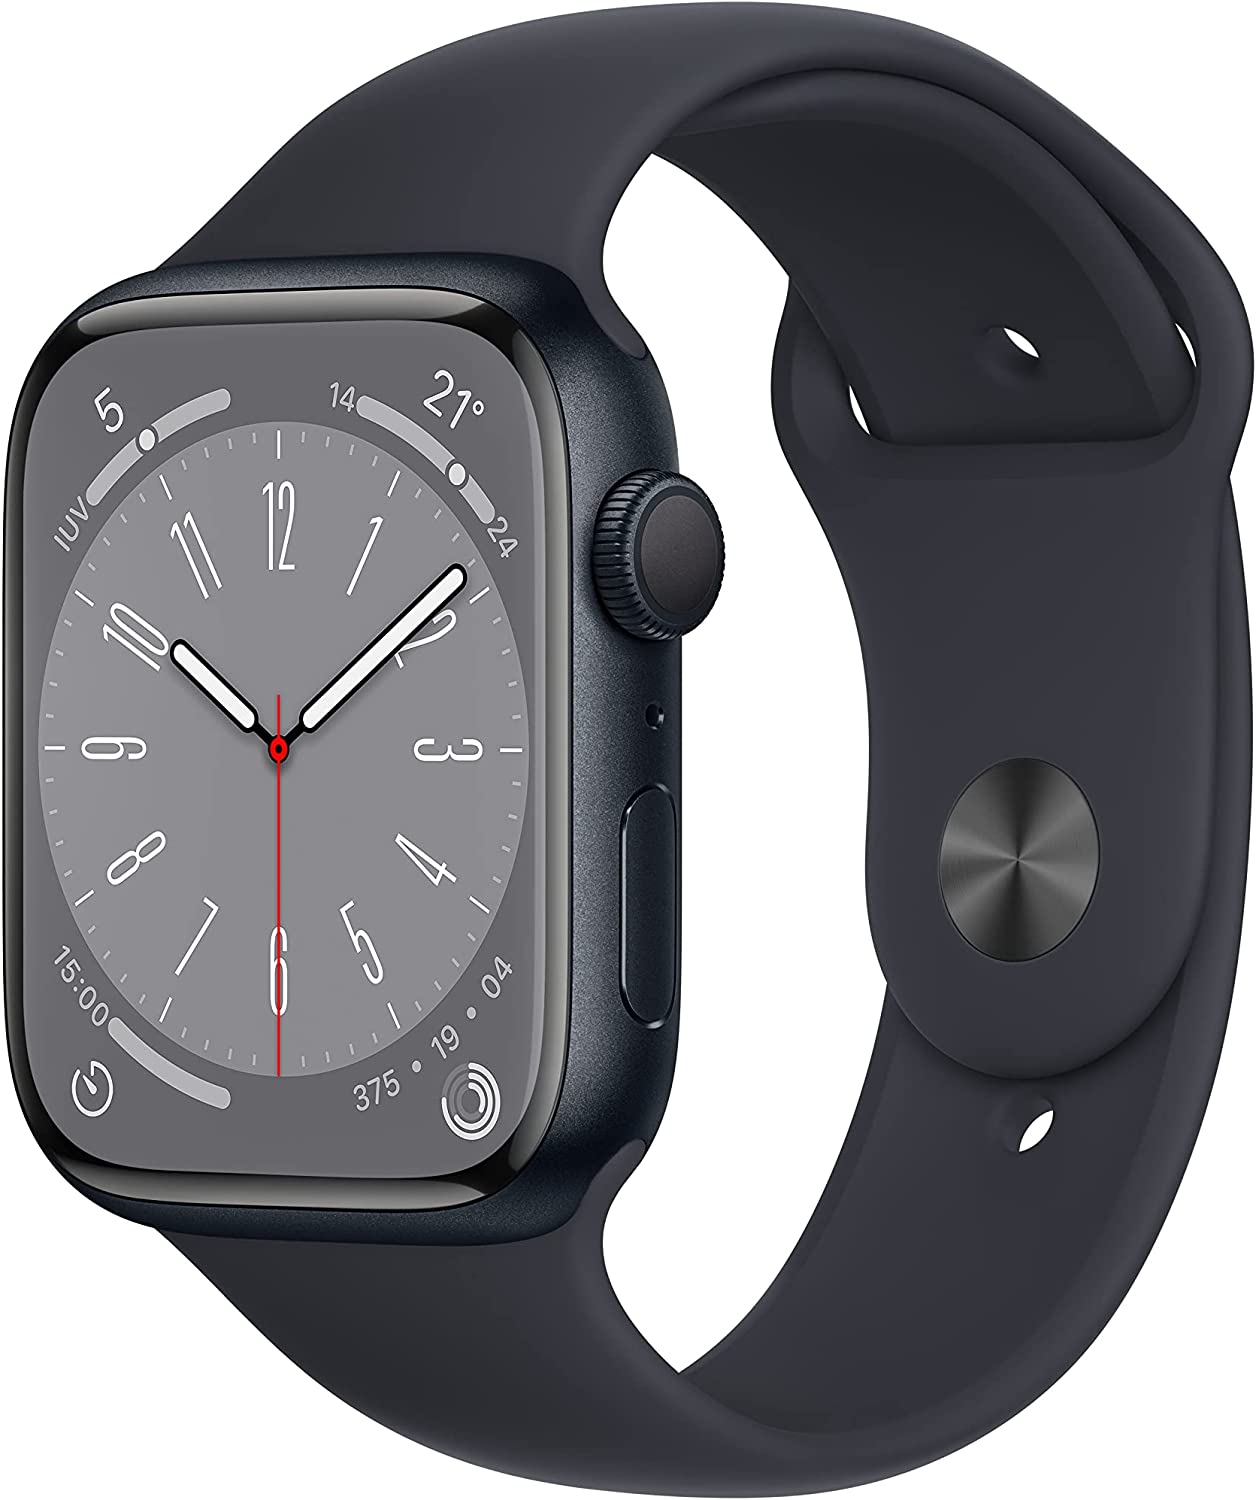 Apple Watch 8 vs 7